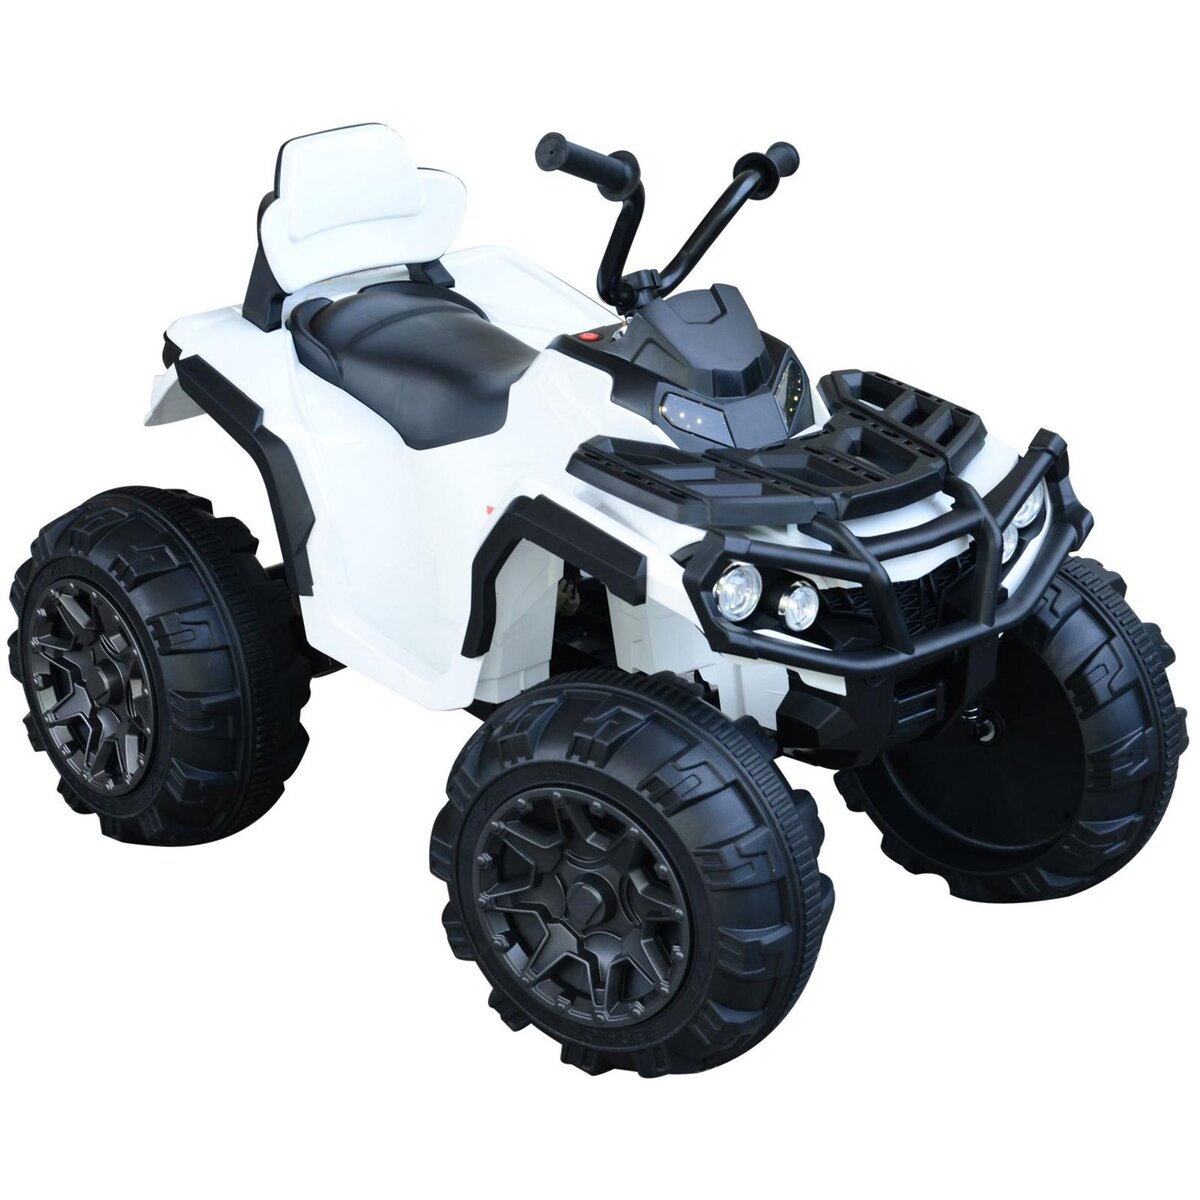 HOMCOM Voiture 4x4 quad buggy électrique enfant 3 à 6 ans effets lumineux  musique V. max. 3 Km/h batterie rechargeable lecteur MP3 multifonction  blanc pas cher 